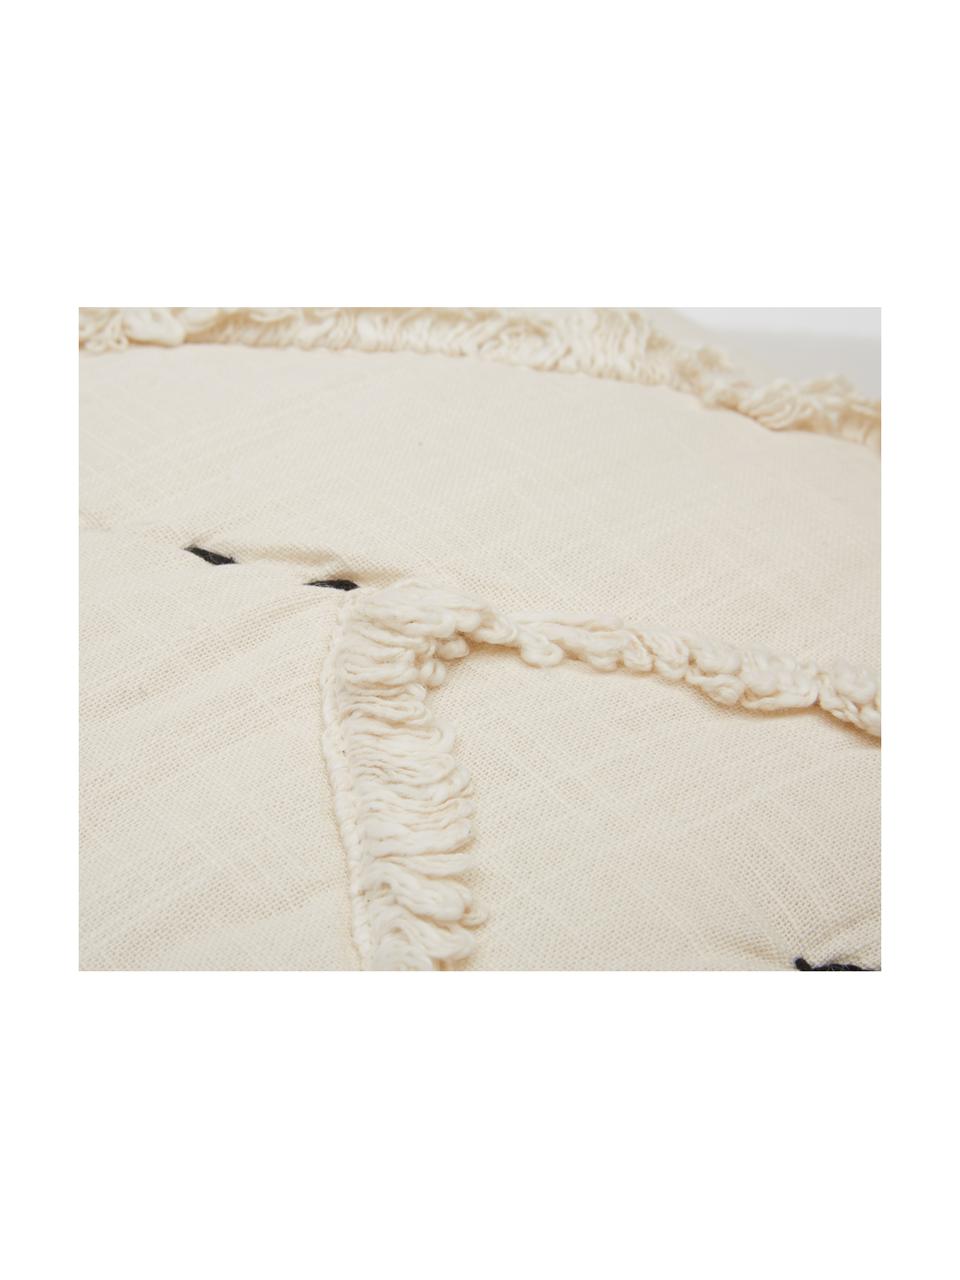 Poszewka na poduszkę Lienzo, 100% bawełna, Złamana biel, S 45 x D 45 cm